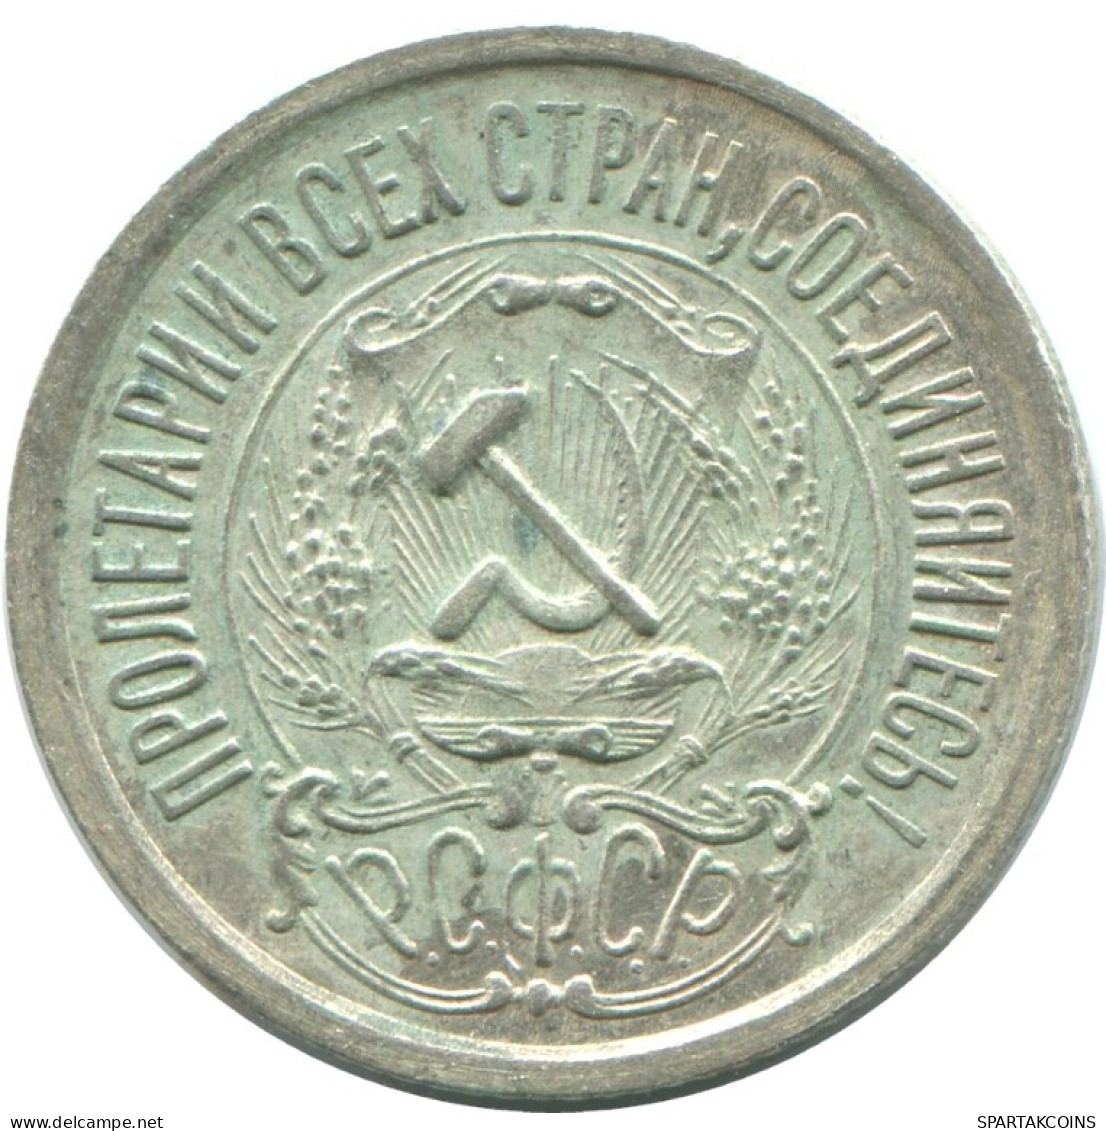 15 KOPEKS 1923 RUSIA RUSSIA RSFSR PLATA Moneda HIGH GRADE #AF113.4.E.A - Russland